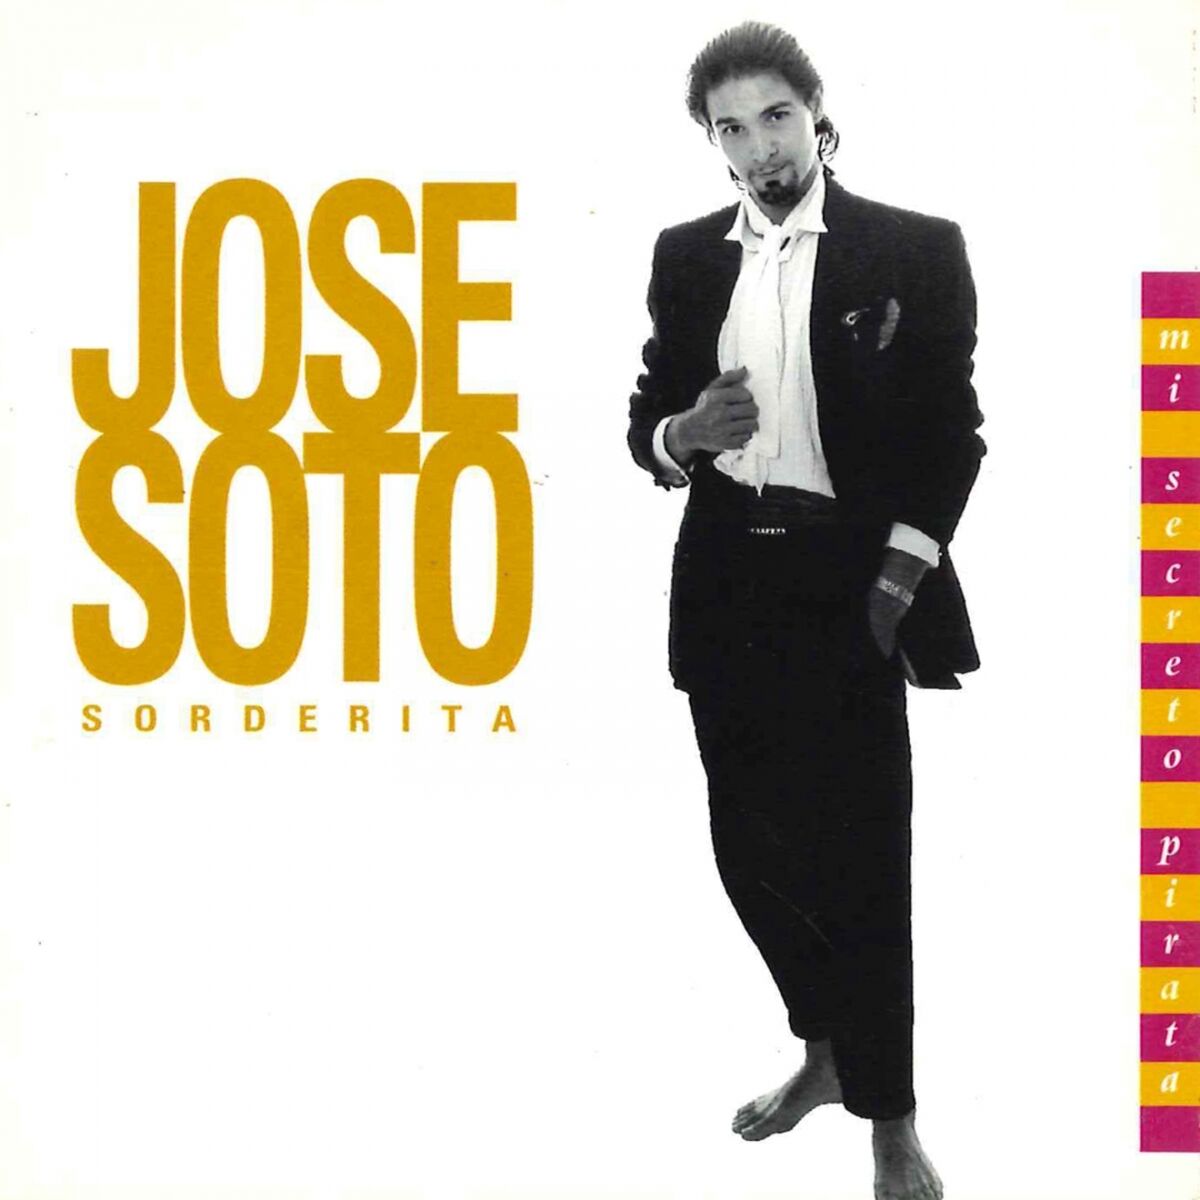 José Soto Sorderita: albums